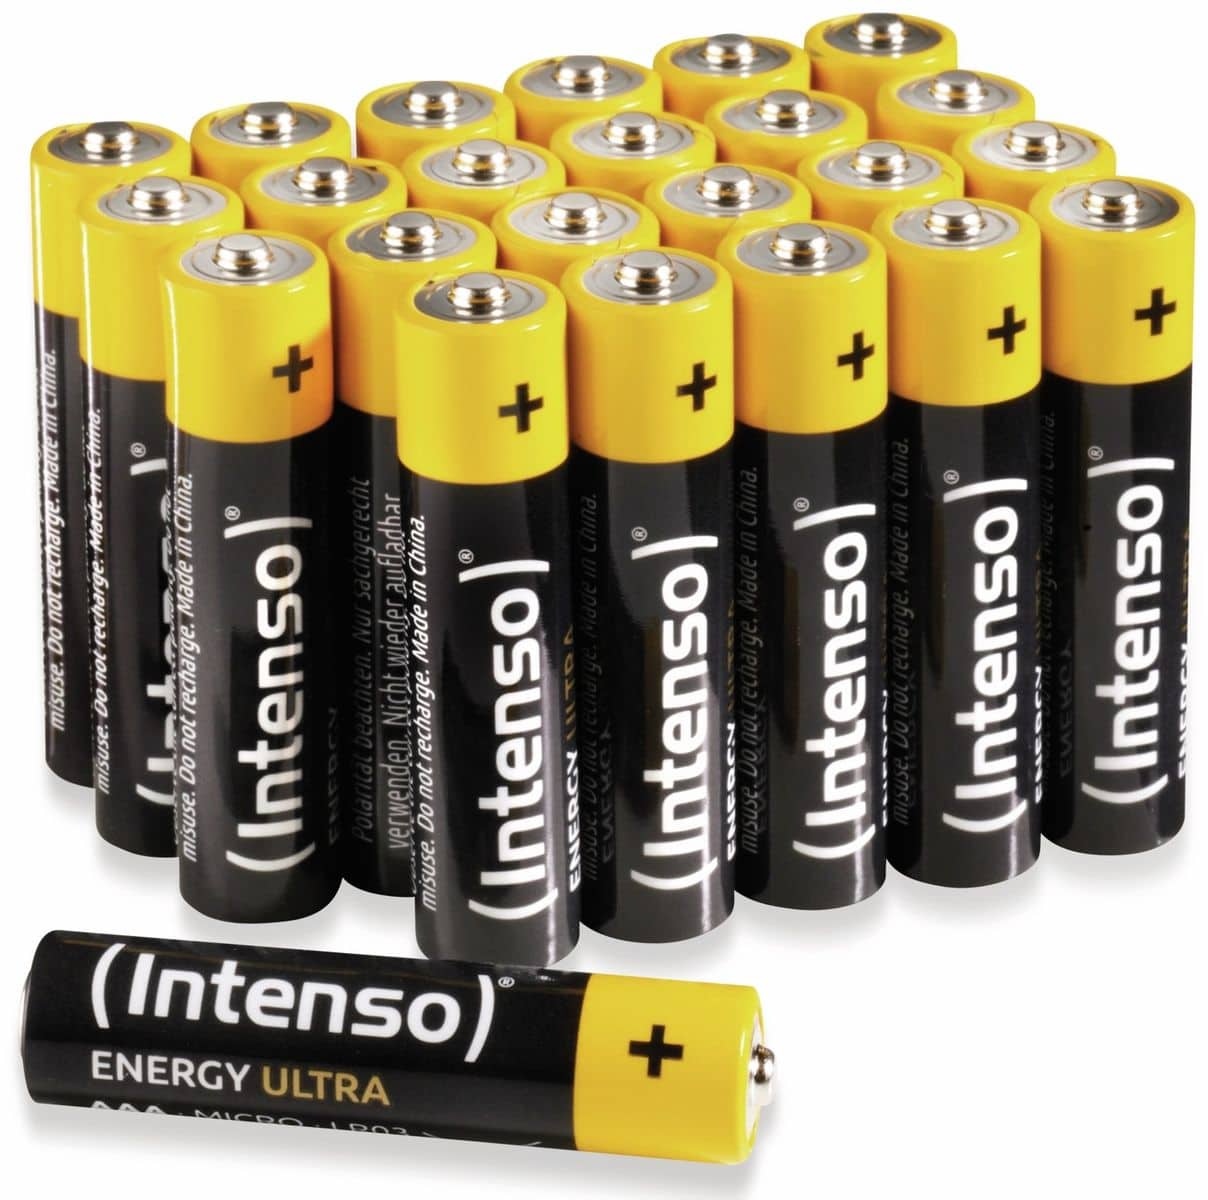 INTENSO Batterie-Set Energy Ultra, AAA LR03, 24 Stück von Intenso